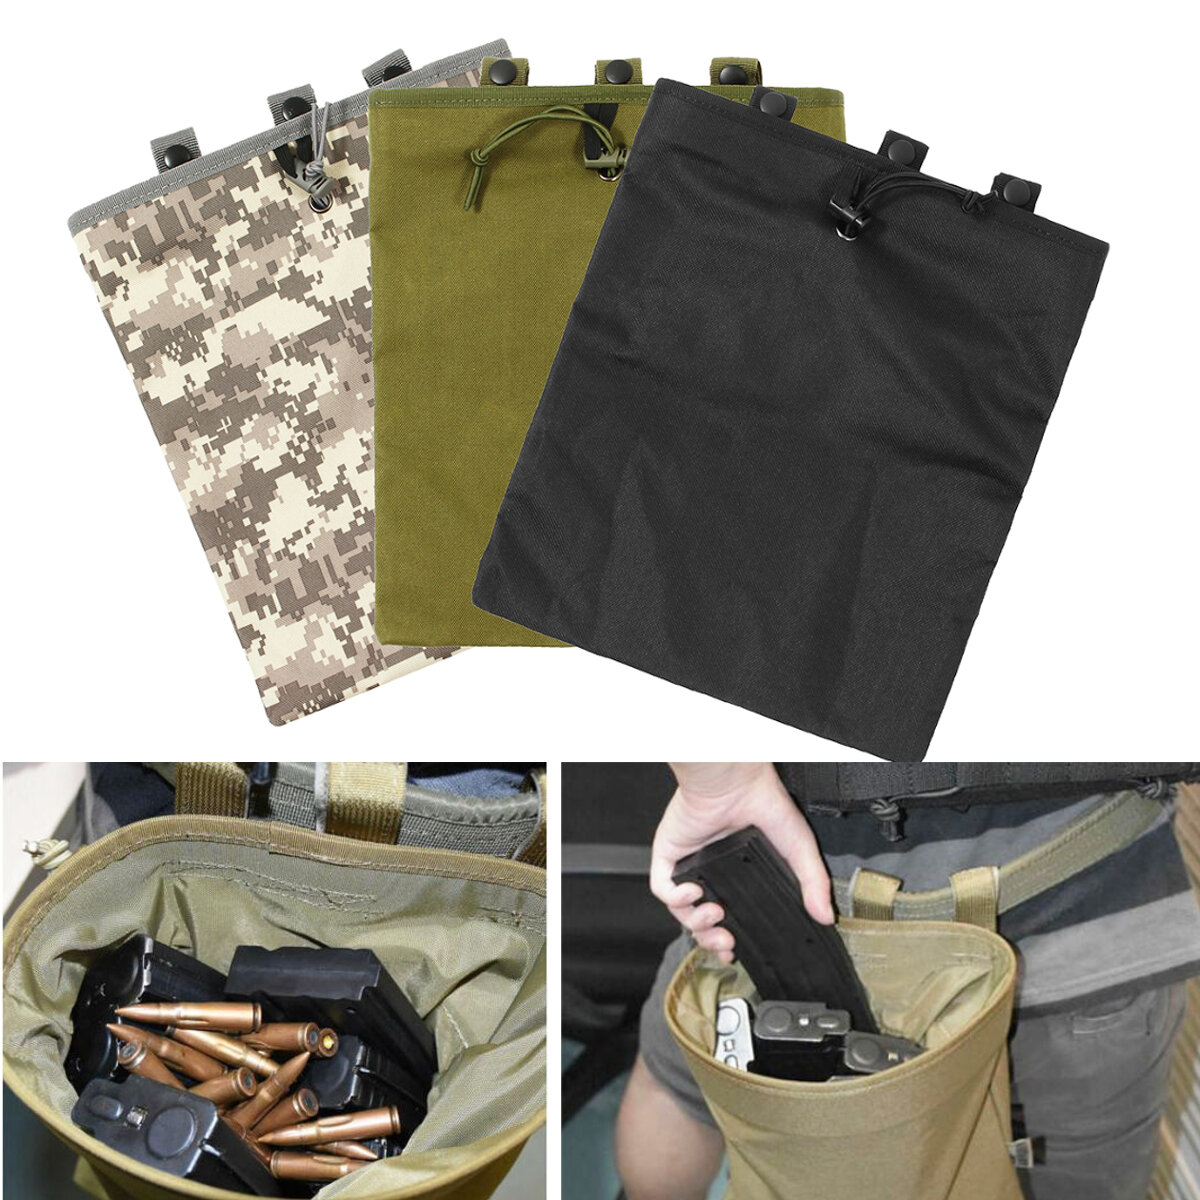 Taktikai táska Oxford anyagból méretben 30x25 cm magazintartóval és lőszeres táskával vadászatra és horgászatra.